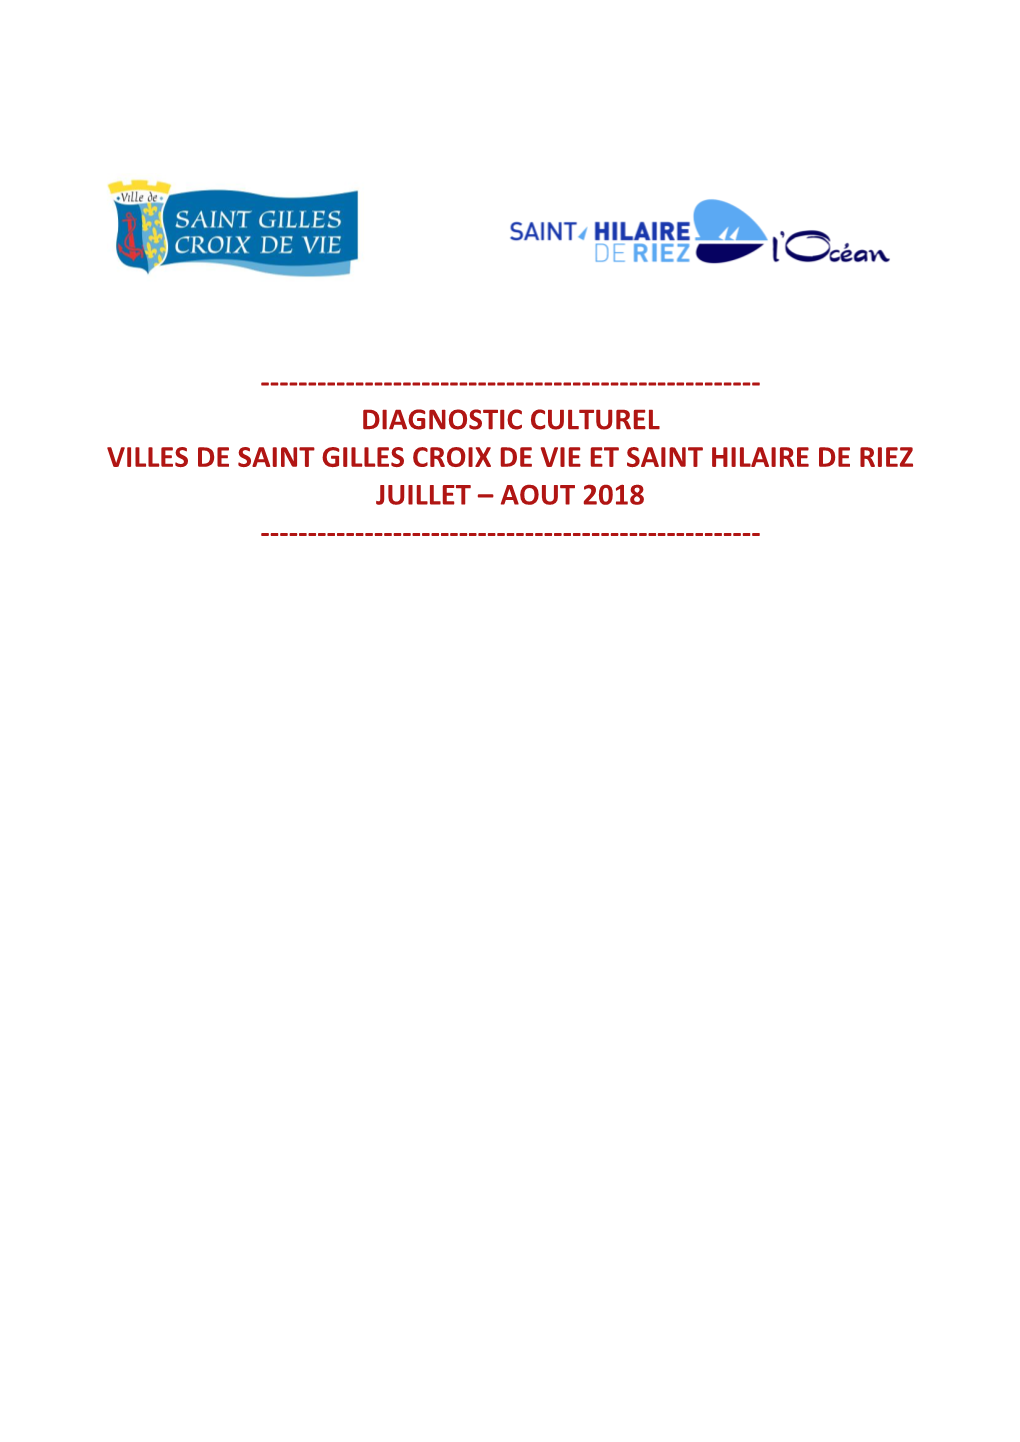 Diagnostic Culturel St Gilles Croix De Vie Et St Hilaire De Riez PDF 1 MO